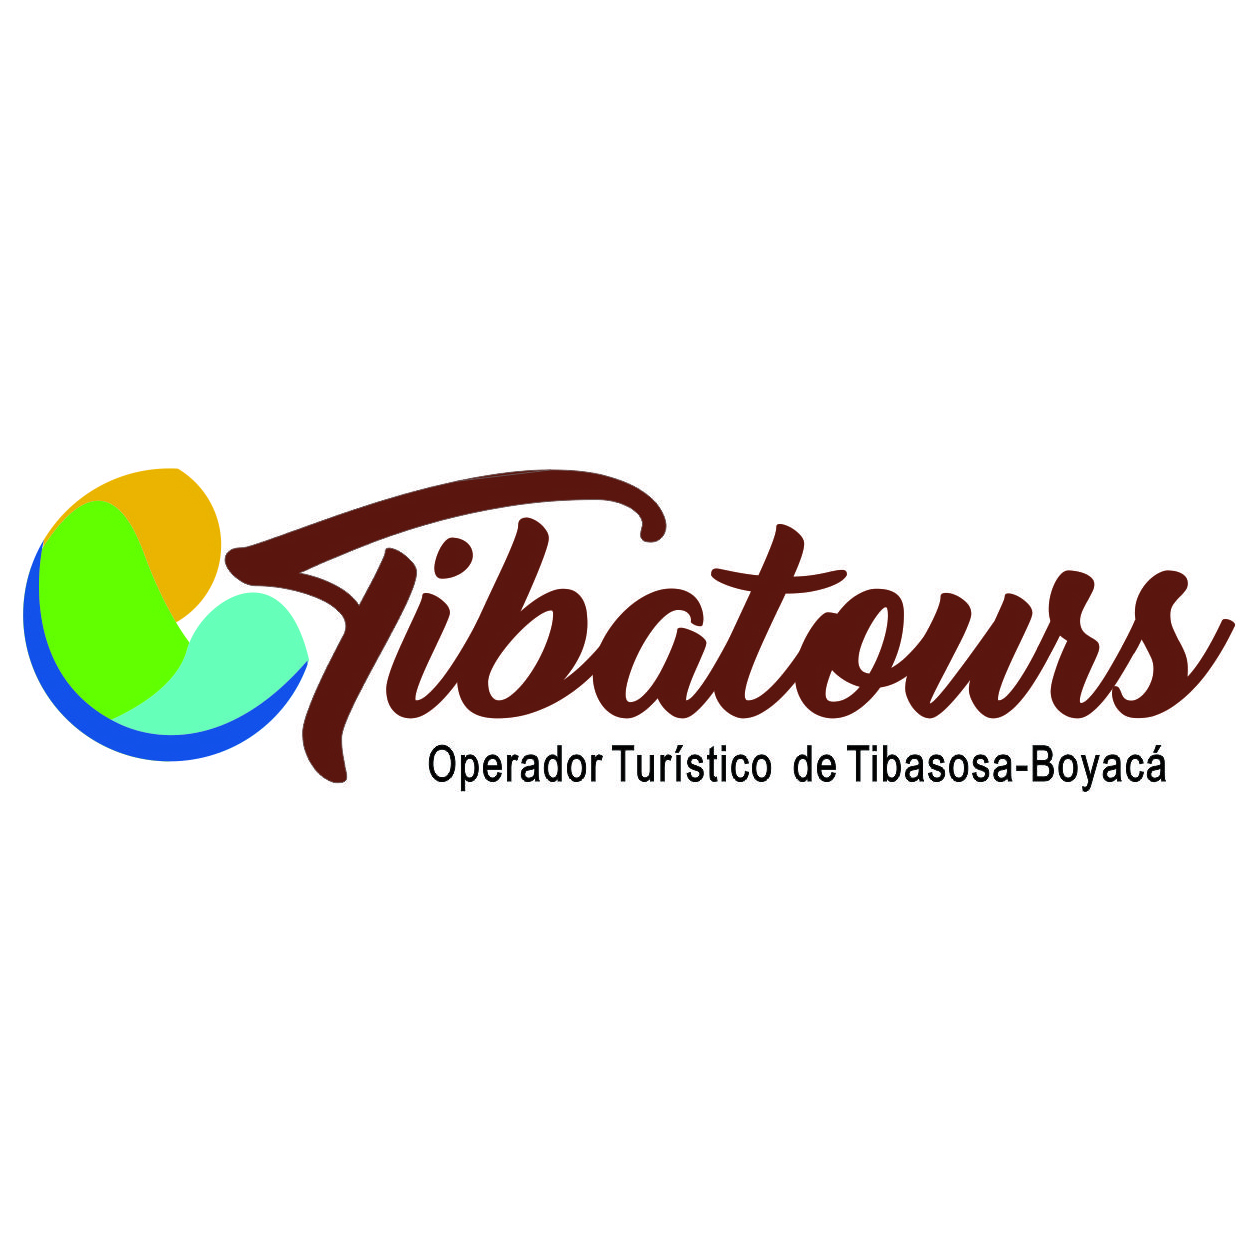 Operador Turístico Tibatours